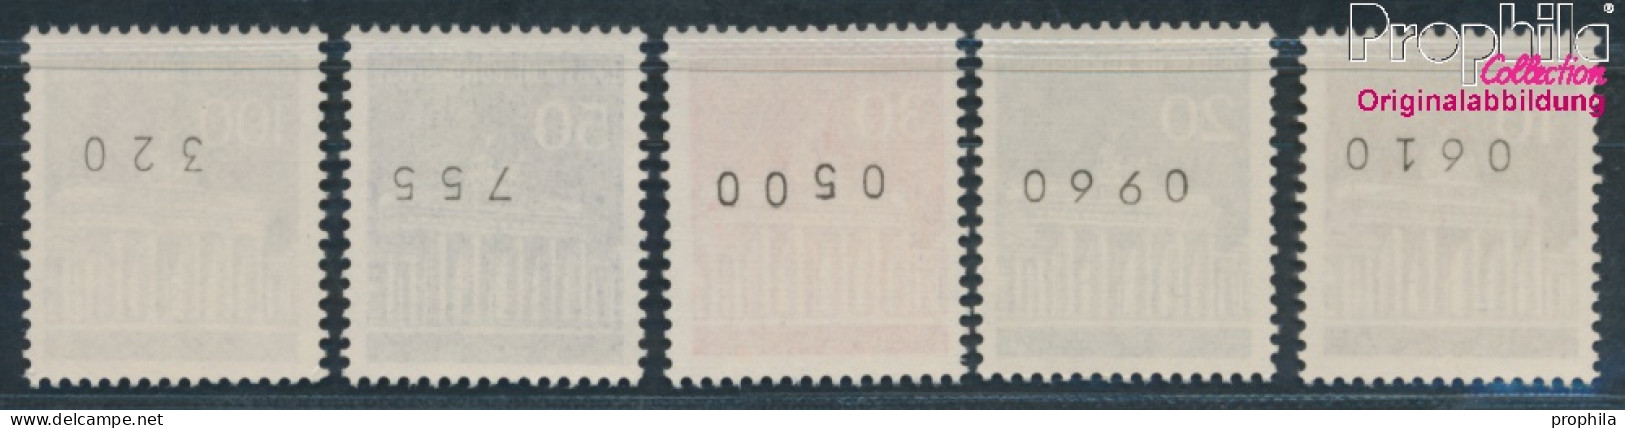 BRD 506w R-510w R Mit Zählnummer (kpl.) Matte Gummierung Postfrisch 1966 Brandenburger Tor (10348149 - Unused Stamps